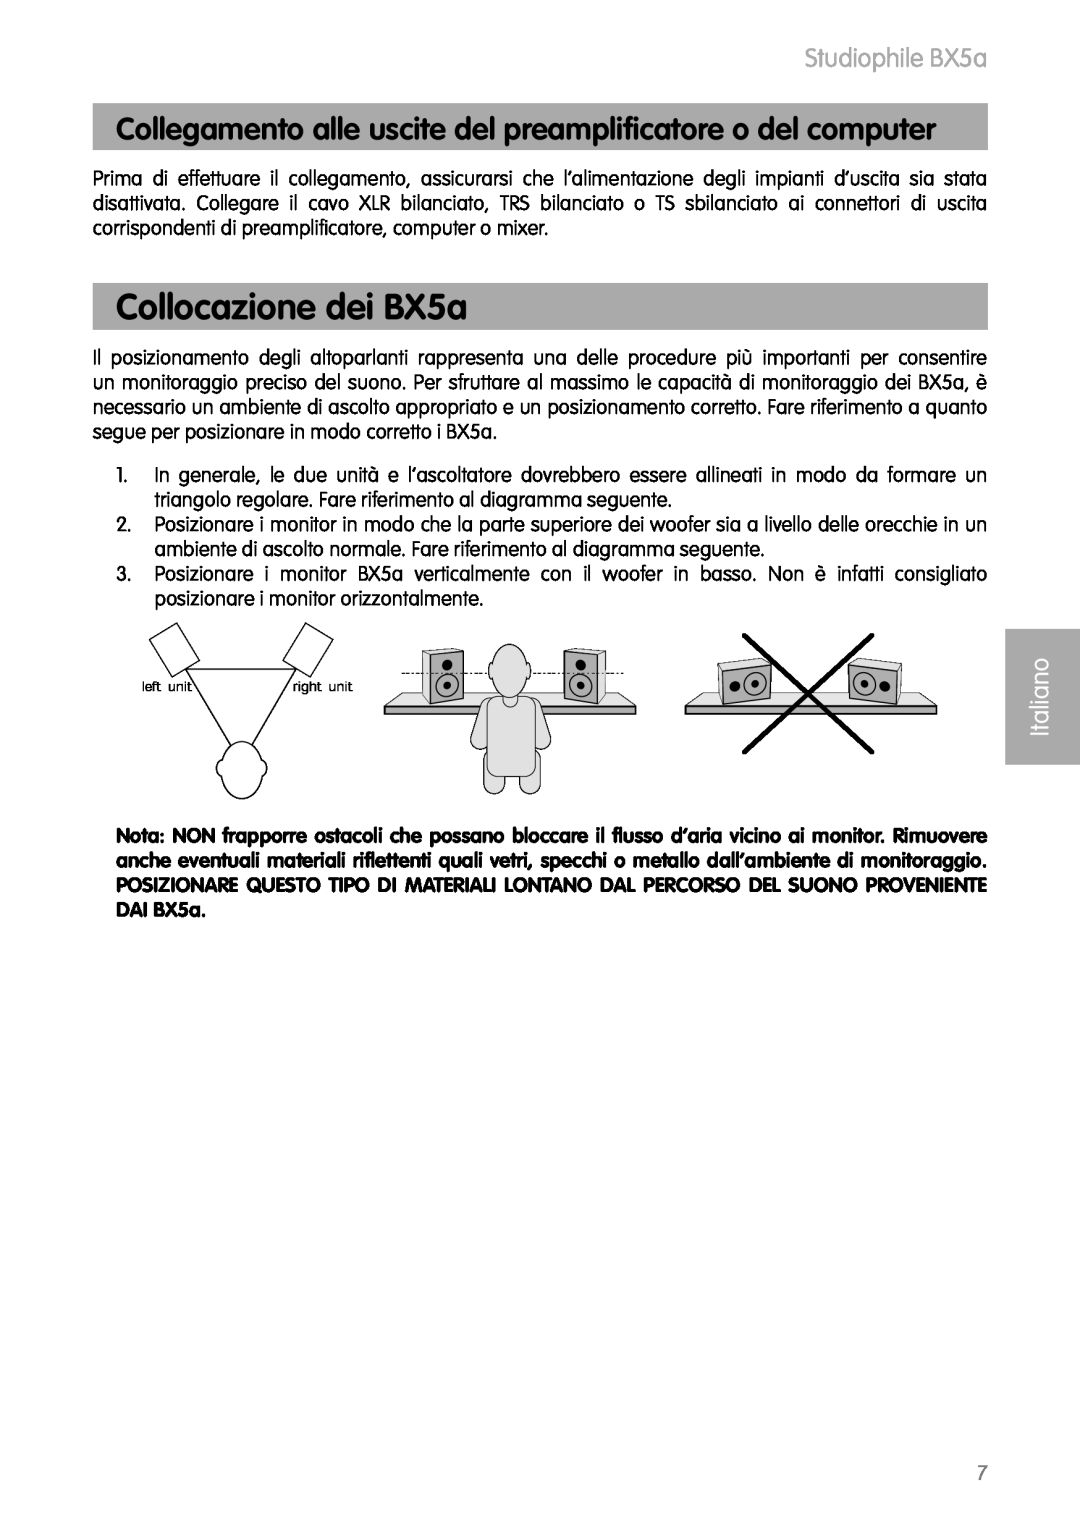 M-Audio BX5as manual Collocazione dei BX5a, Studiophile BX5a, Italiano 